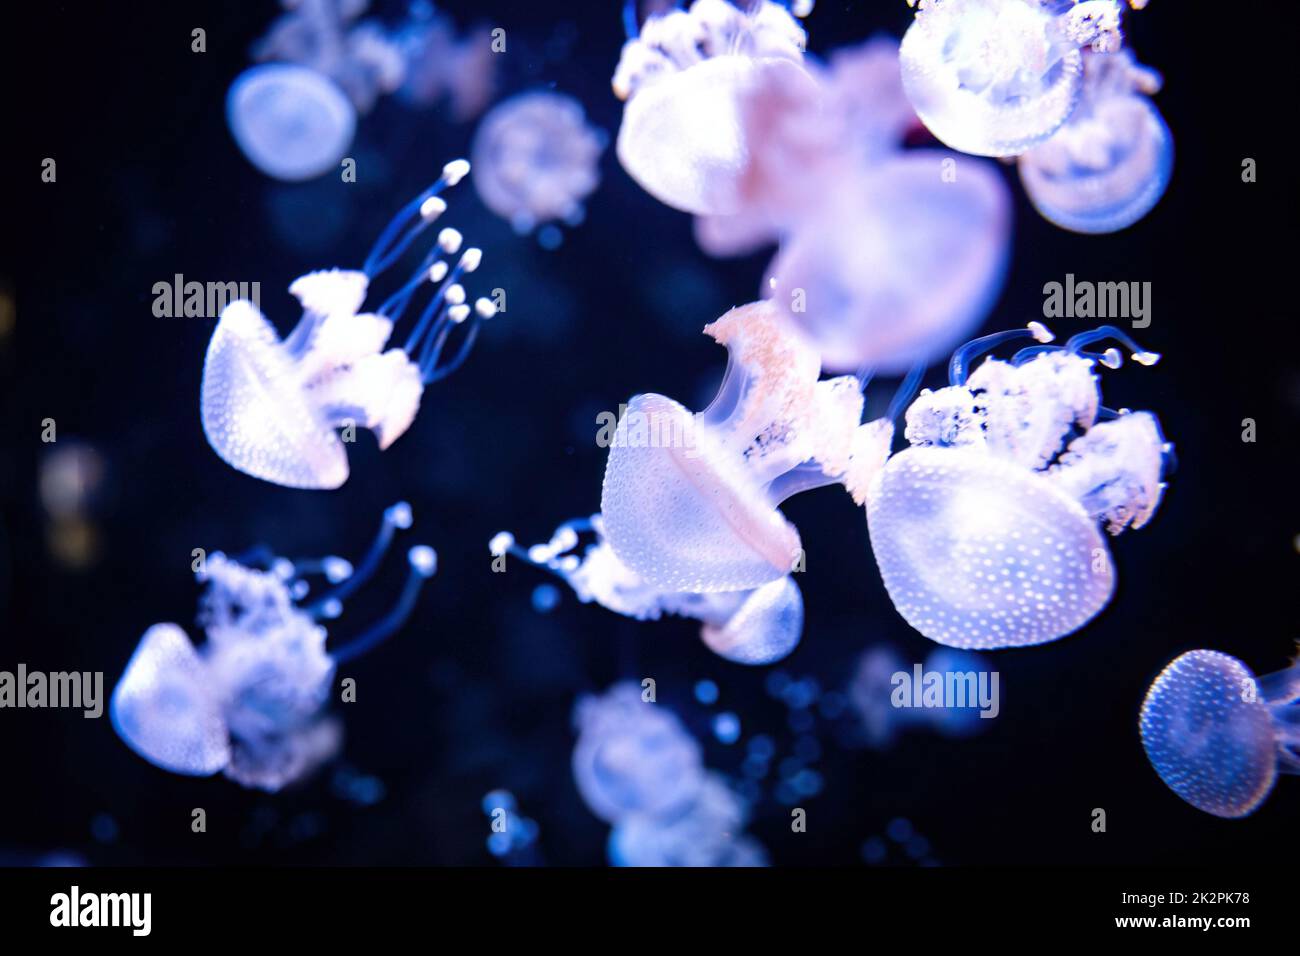 Beautiful white neon glowing jellyfish close up in dark water Stock Photo